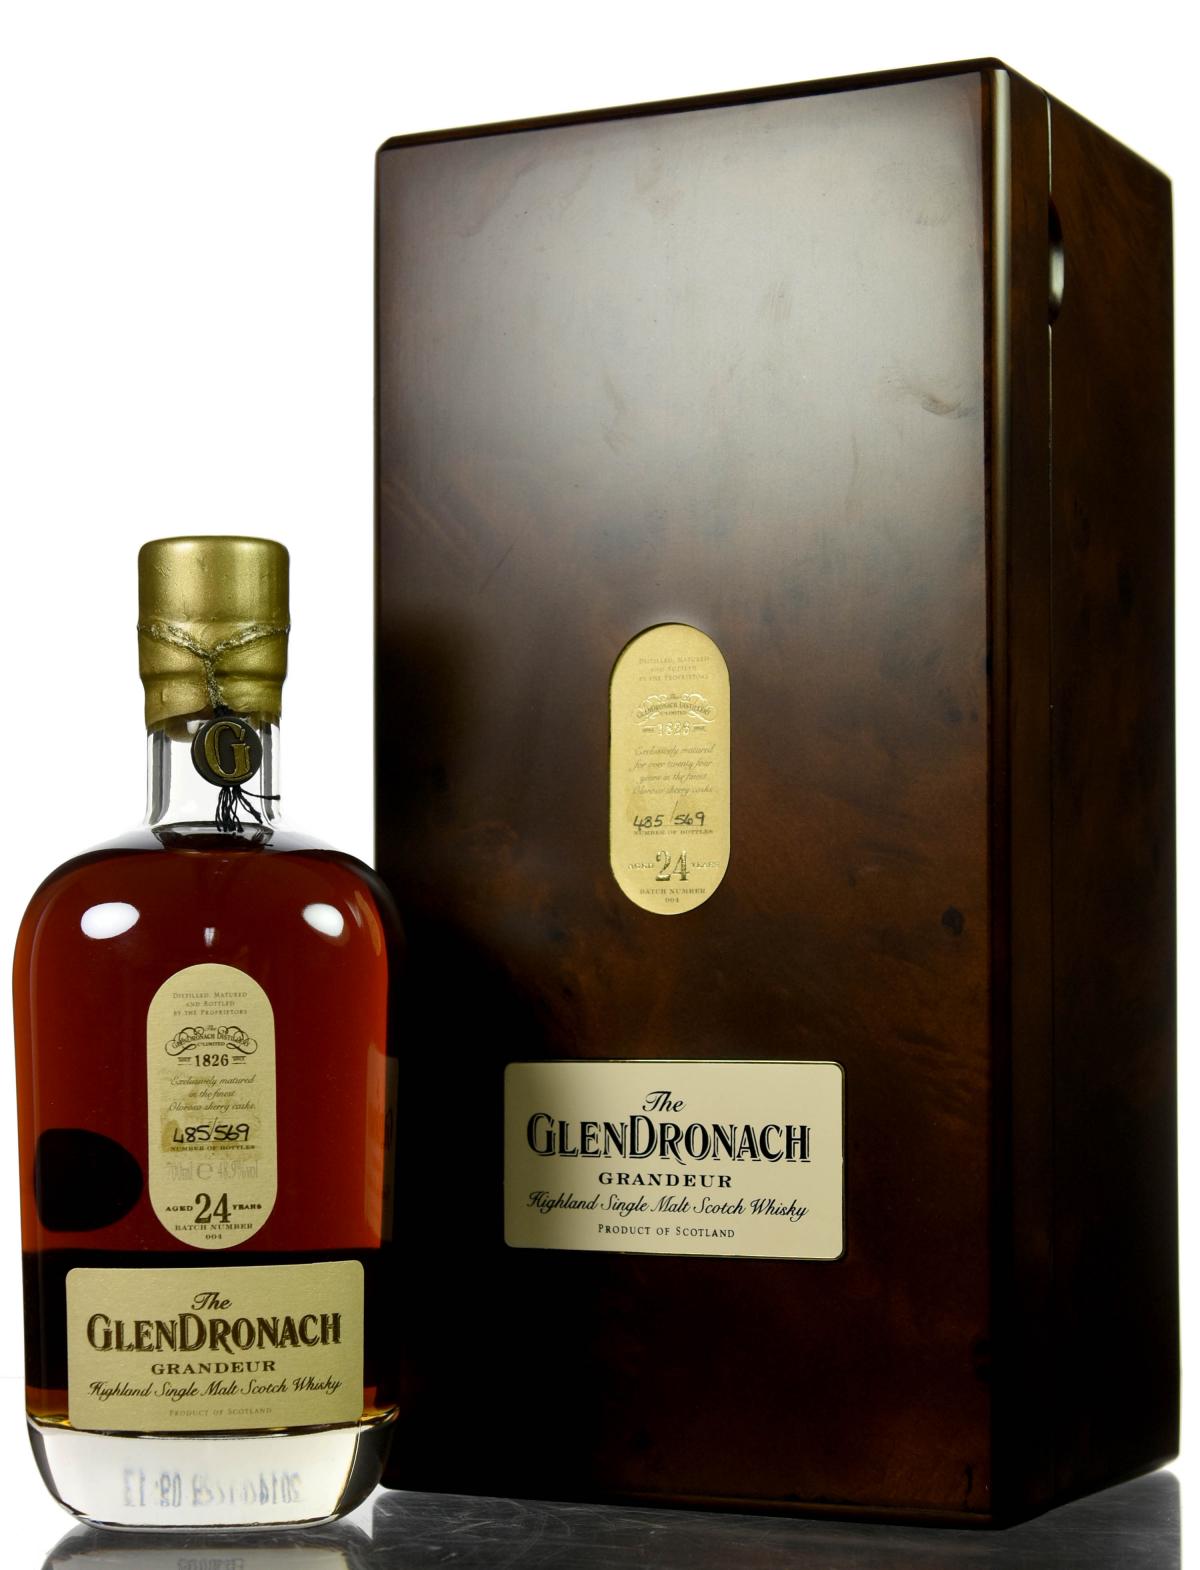 Glendronach 24 Year Old - Grandeur Batch 4